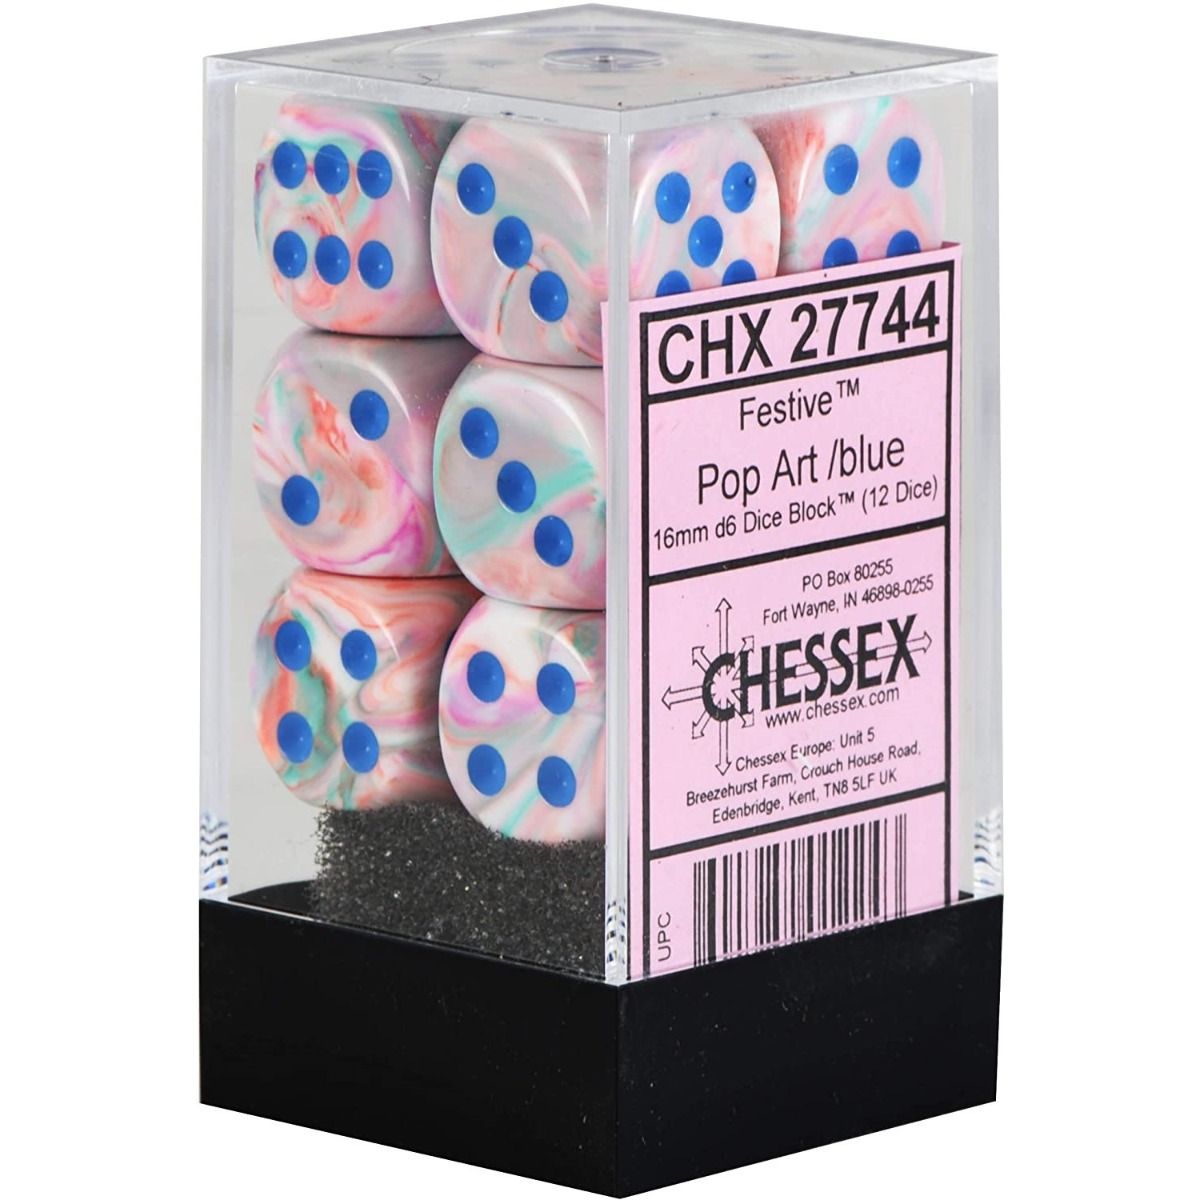 Chessex - Festive 16mm D6 Set - Pop Art/Blue (CHX27744)